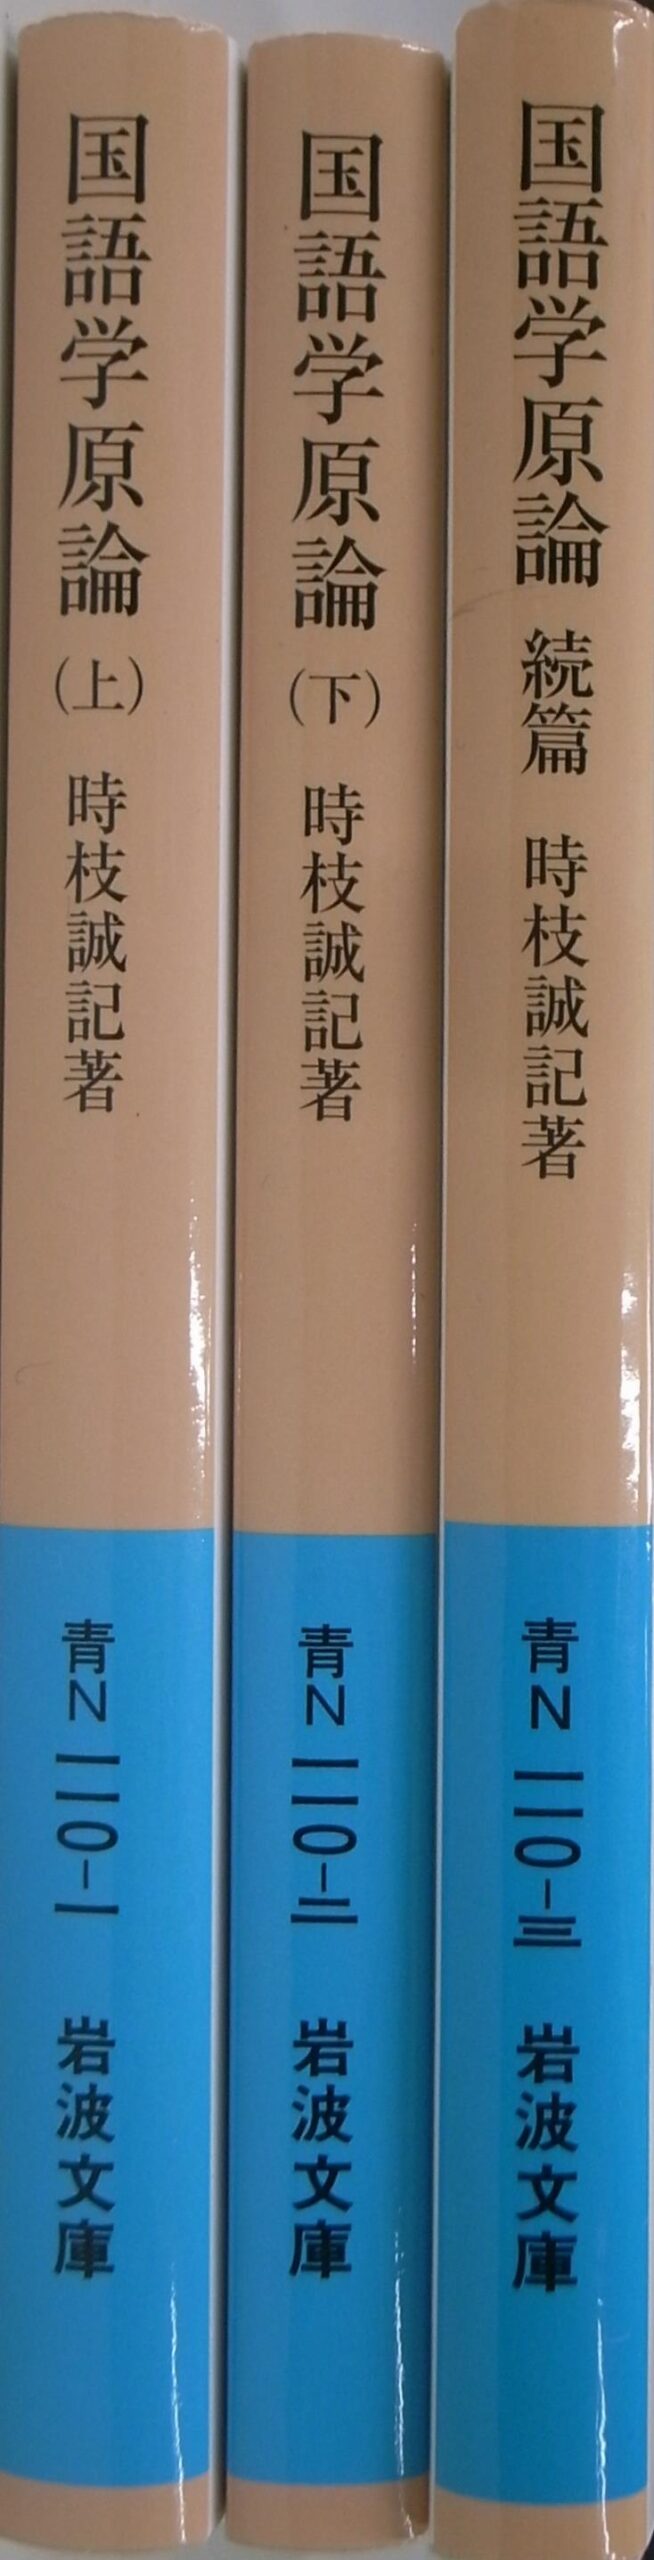 国語学原論 上下・続の計３冊揃 岩波文庫 時枝誠記 | 古本よみた屋 おじいさんの本、買います。